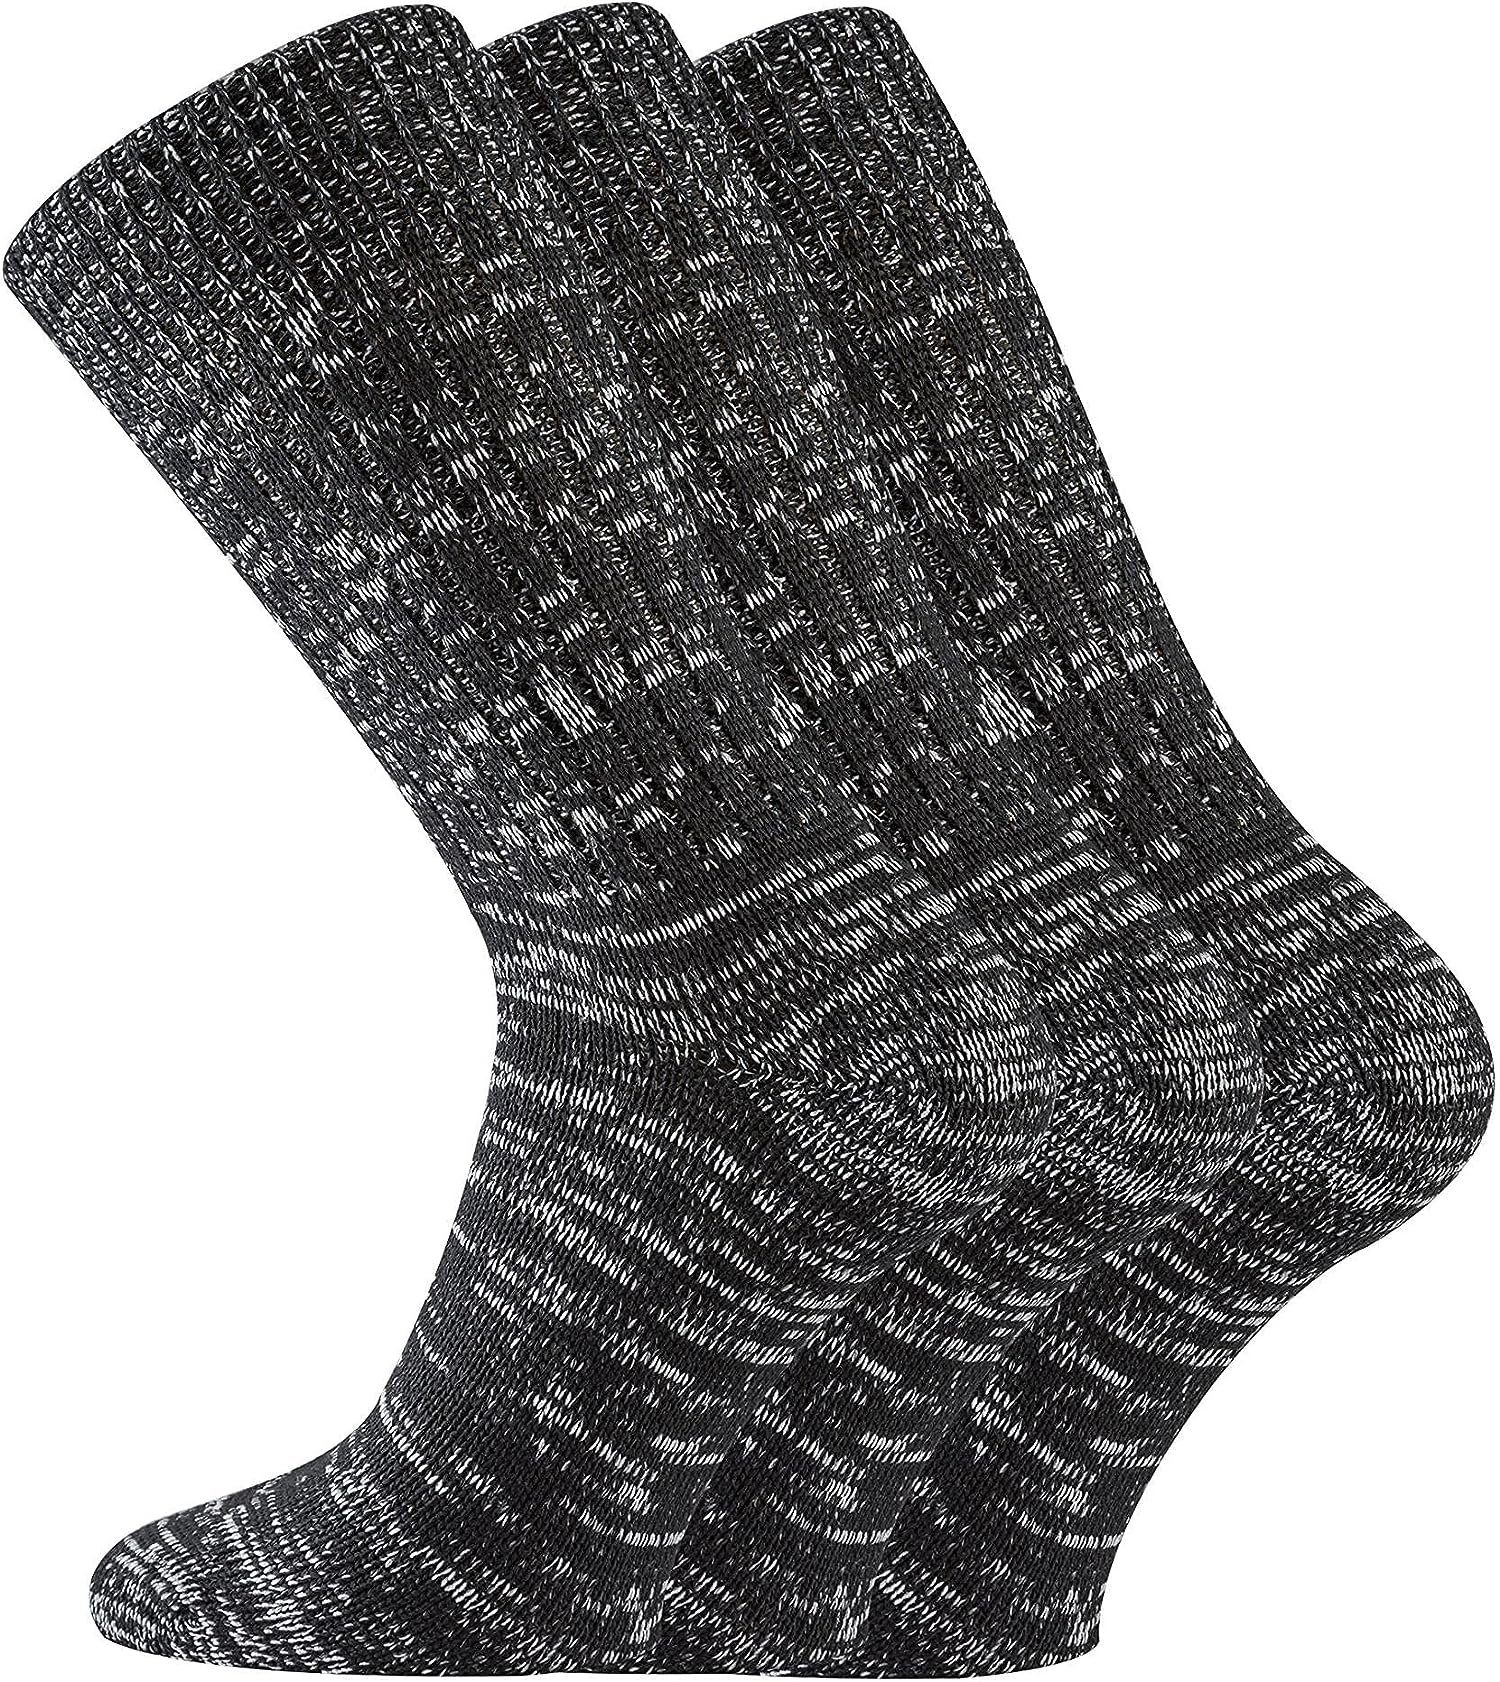 TippTexx 24 Socken 6 Paar Original-Jeanssocken (Jeans-Socken) für Damen und Herren Schwarz-meliert